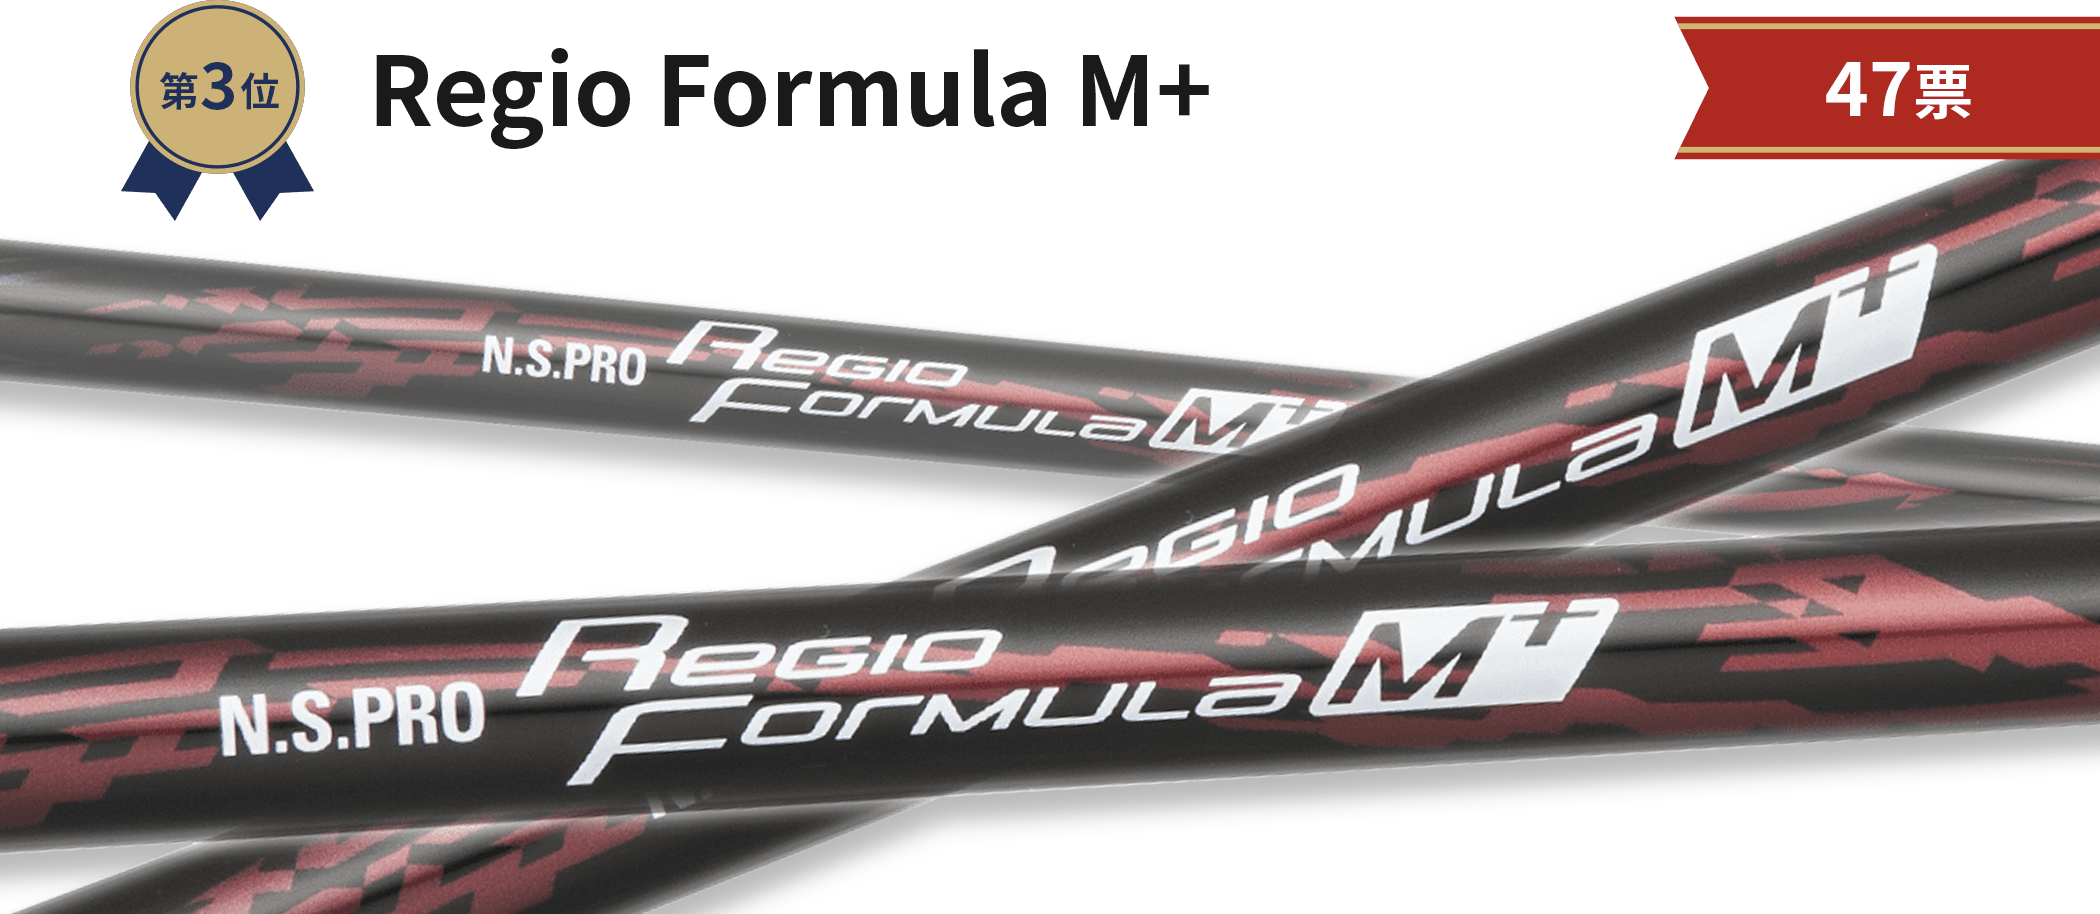 Regio Formula M+